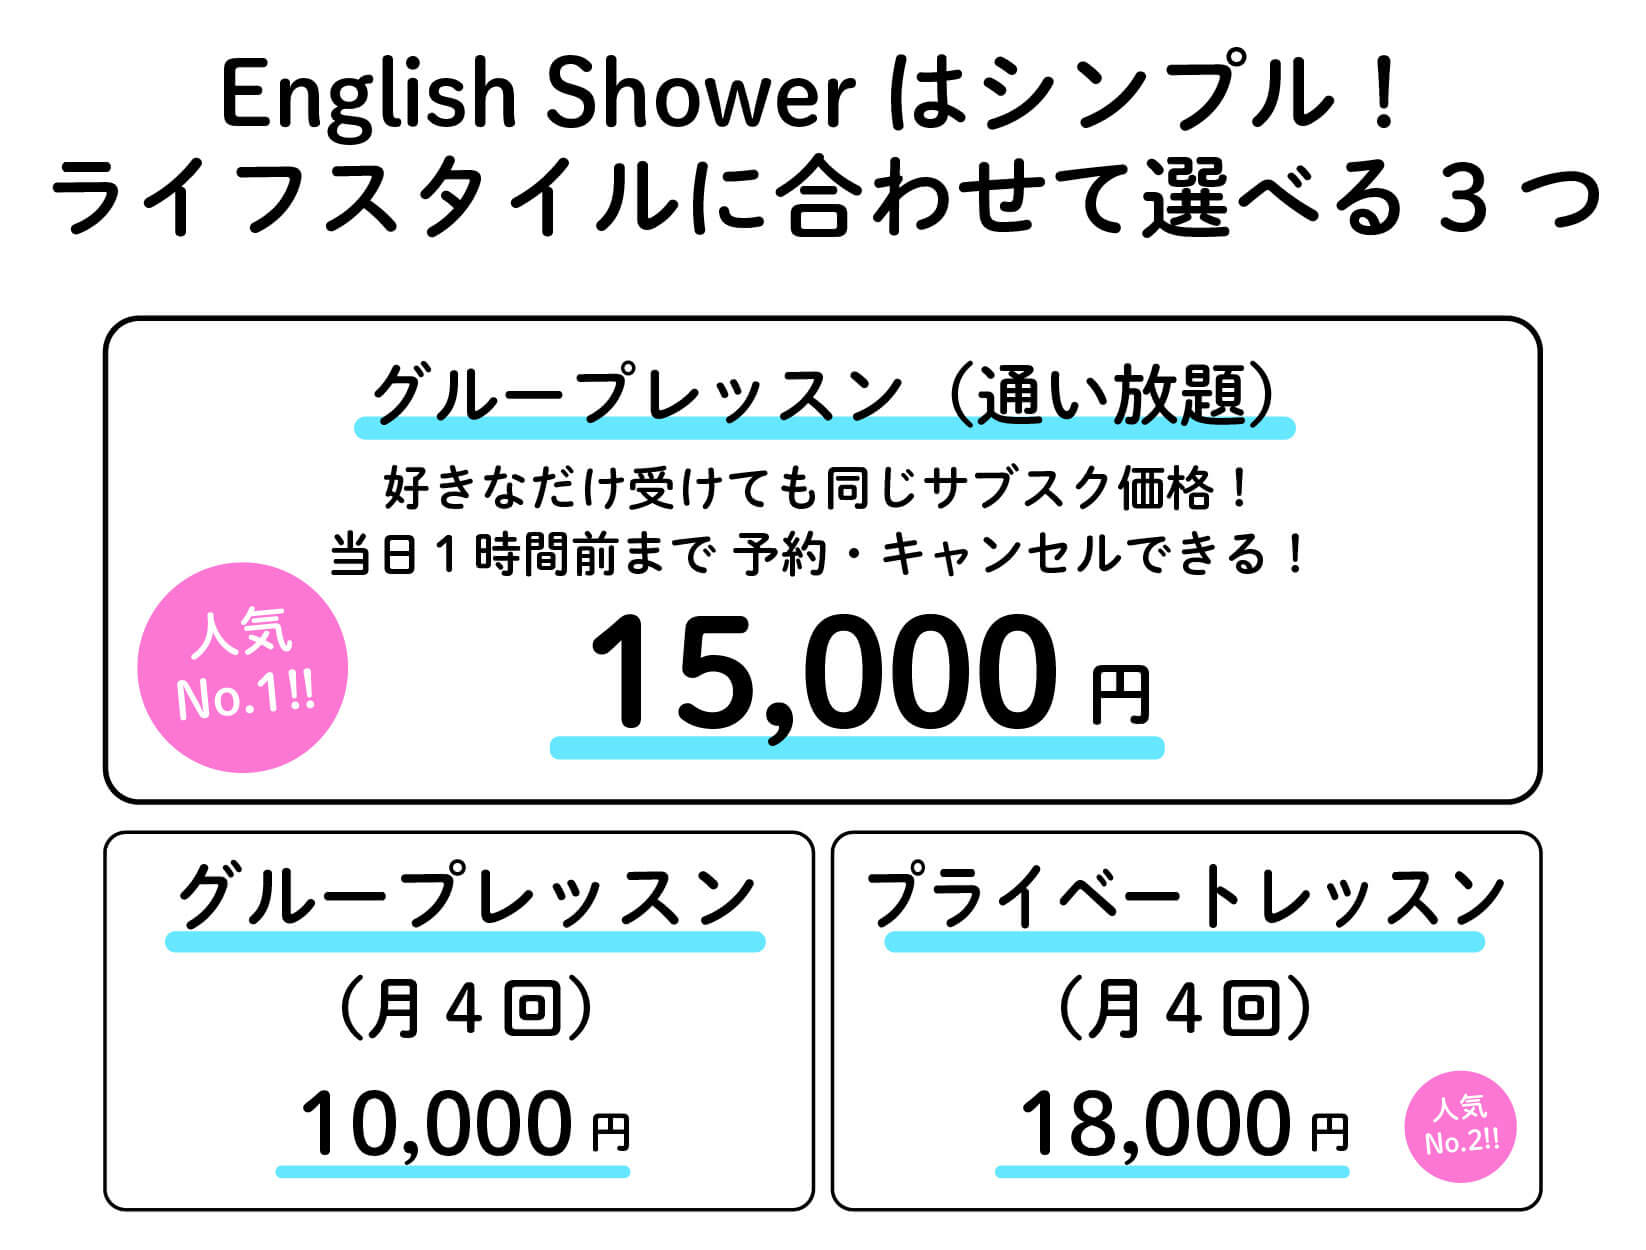 English showerは業界最安値1レッスン単価340円